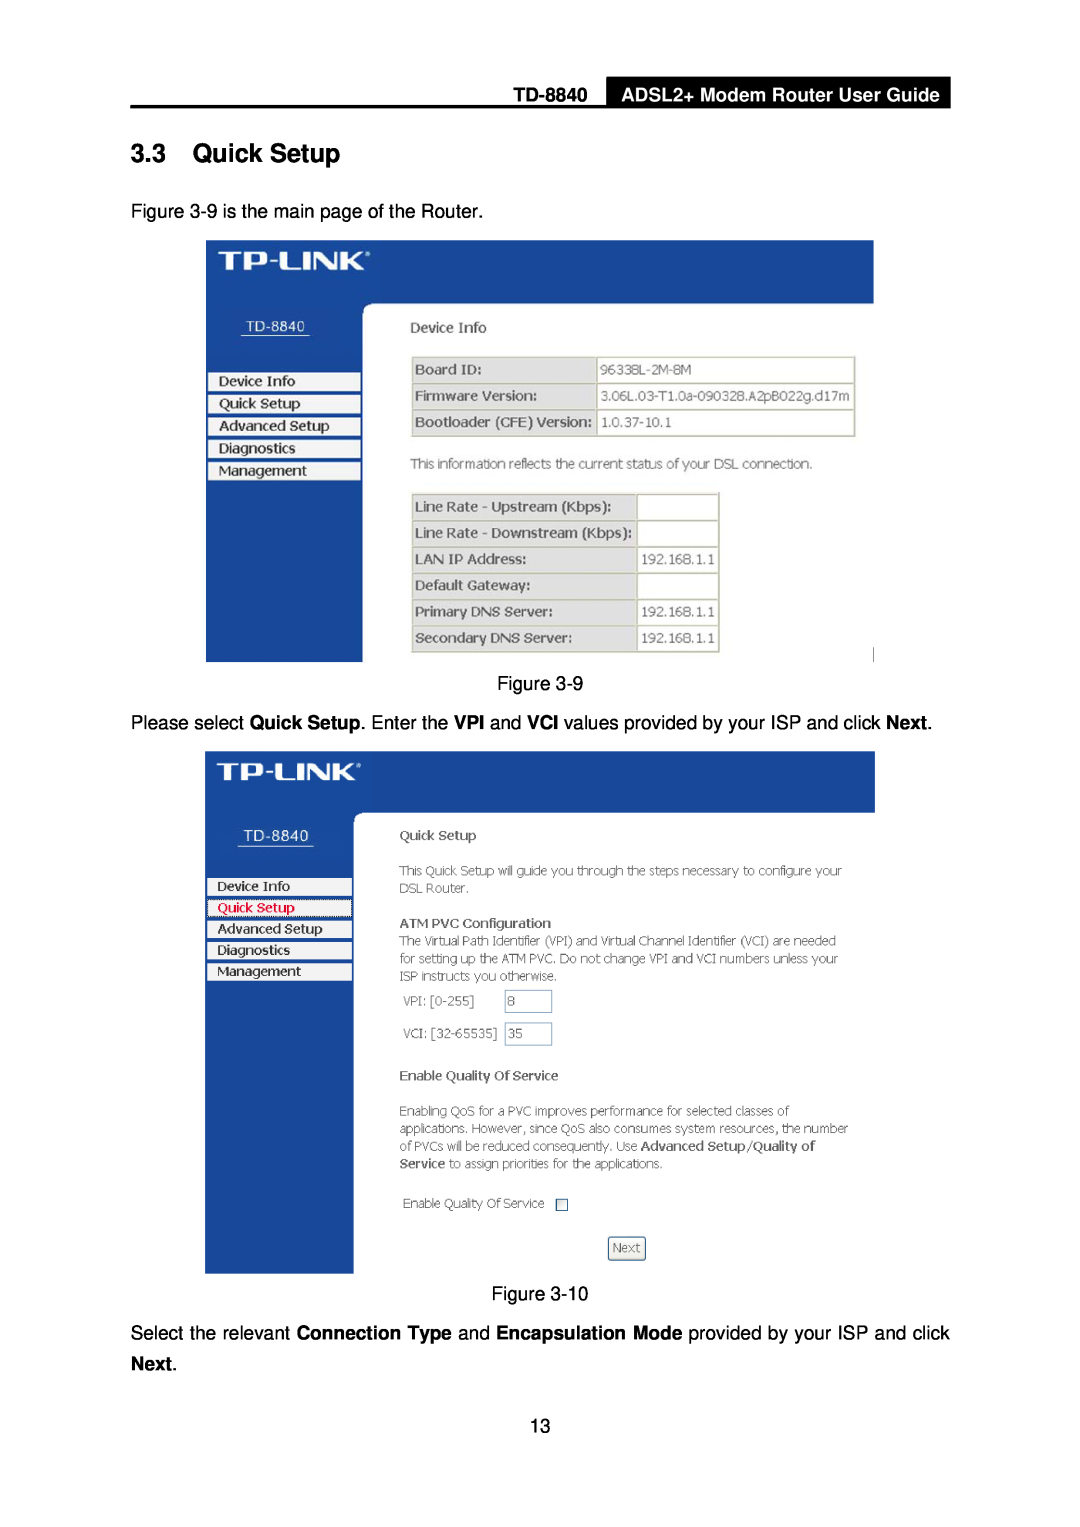 TP-Link TD-8840 manual 3.3Quick Setup, ADSL2+ Modem Router User Guide, Next 